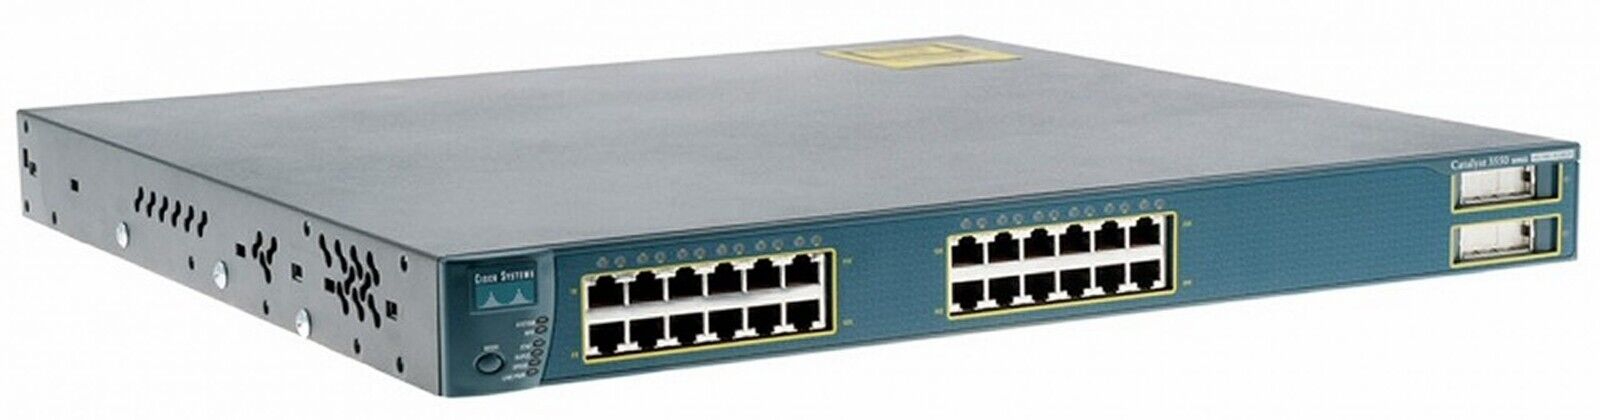 Cisco Catalyst 3550 24 Port Switch 1 Fiber module preinstalled